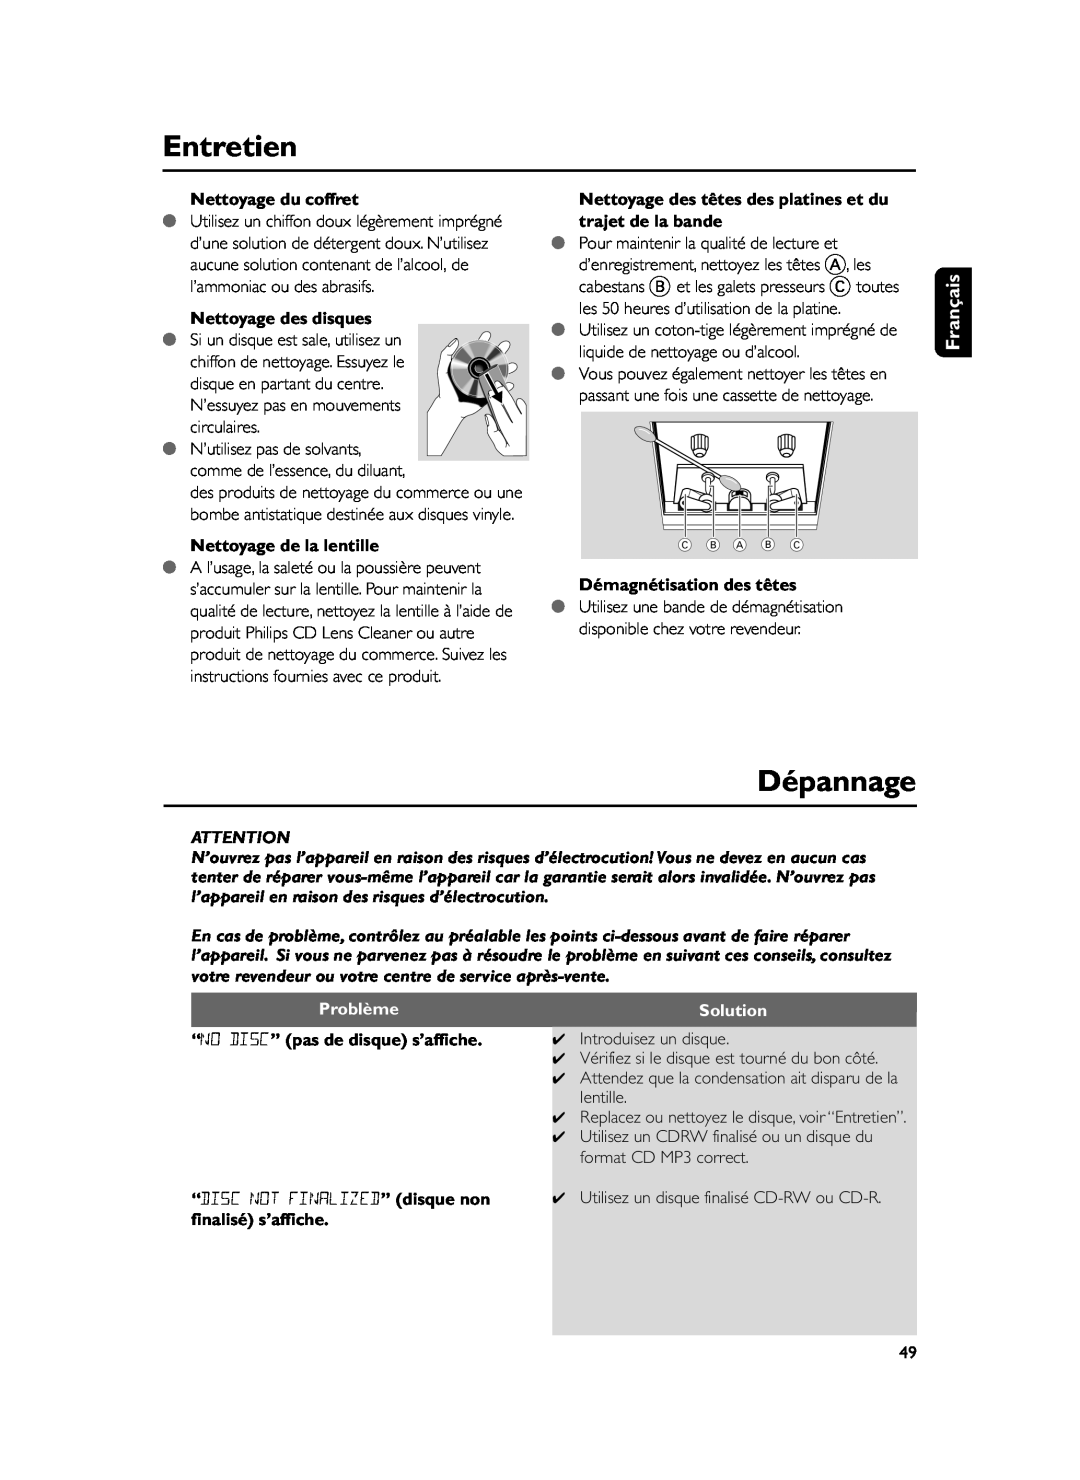 Philips FWM37 manual Entretien, Dépannage, Nettoyage du coffret, Nettoyage des disques, Nettoyage de la lentille, Problème 